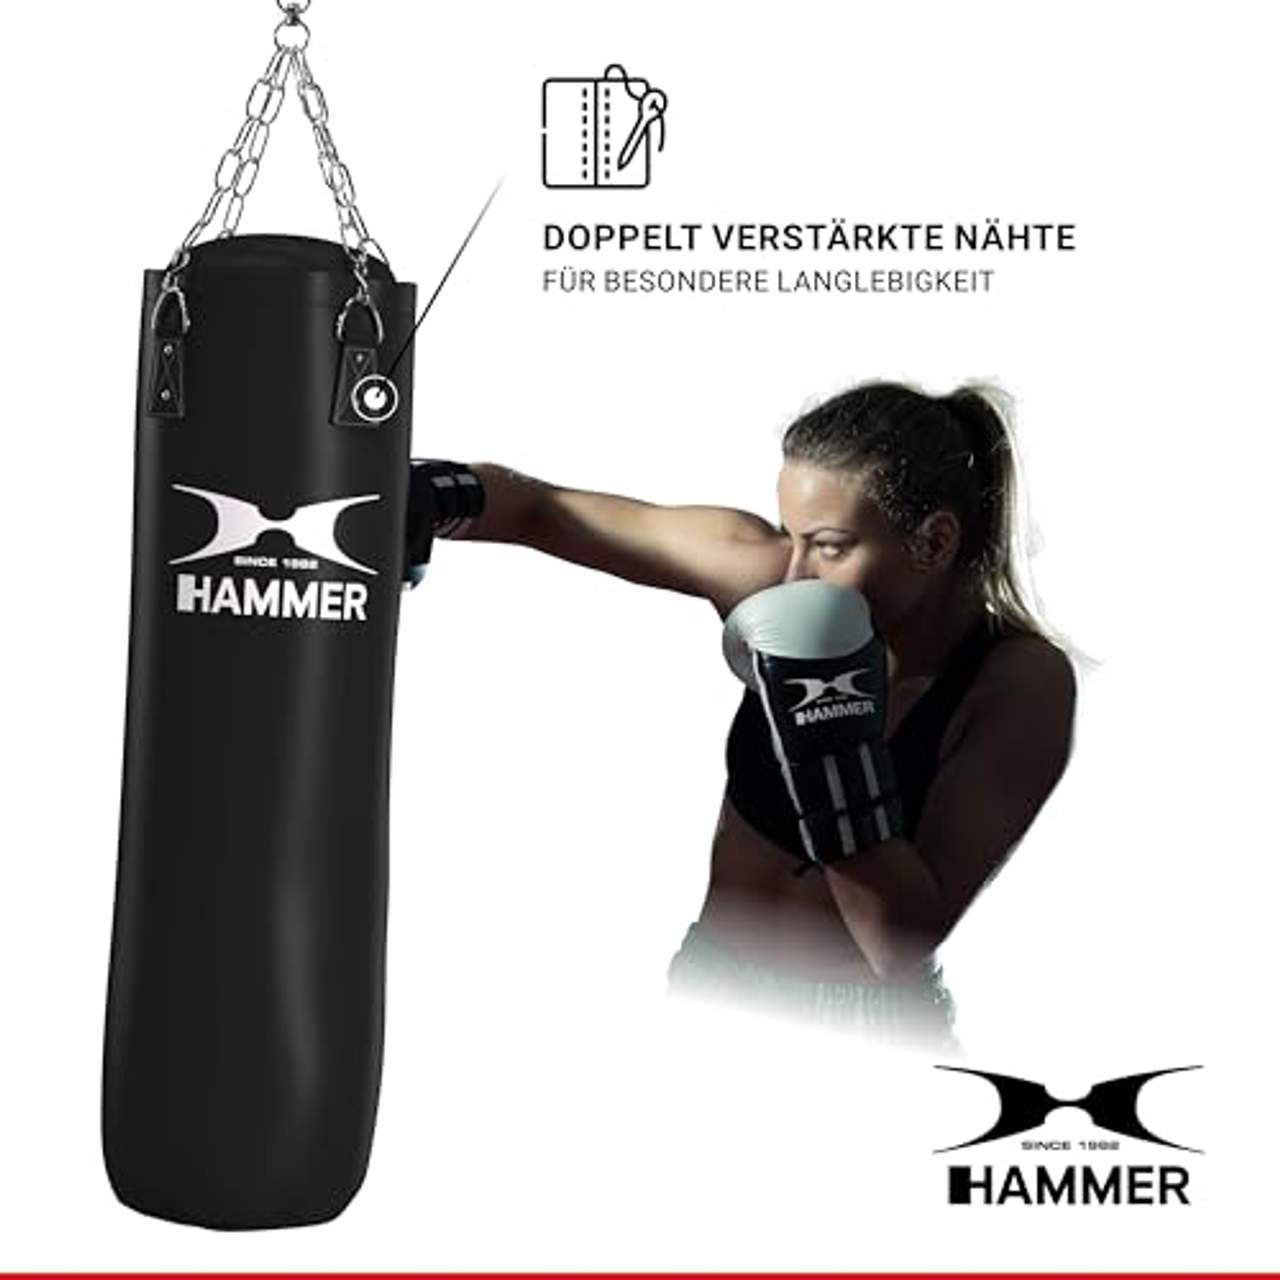 Hammer Boxsack Kunstleder Kick